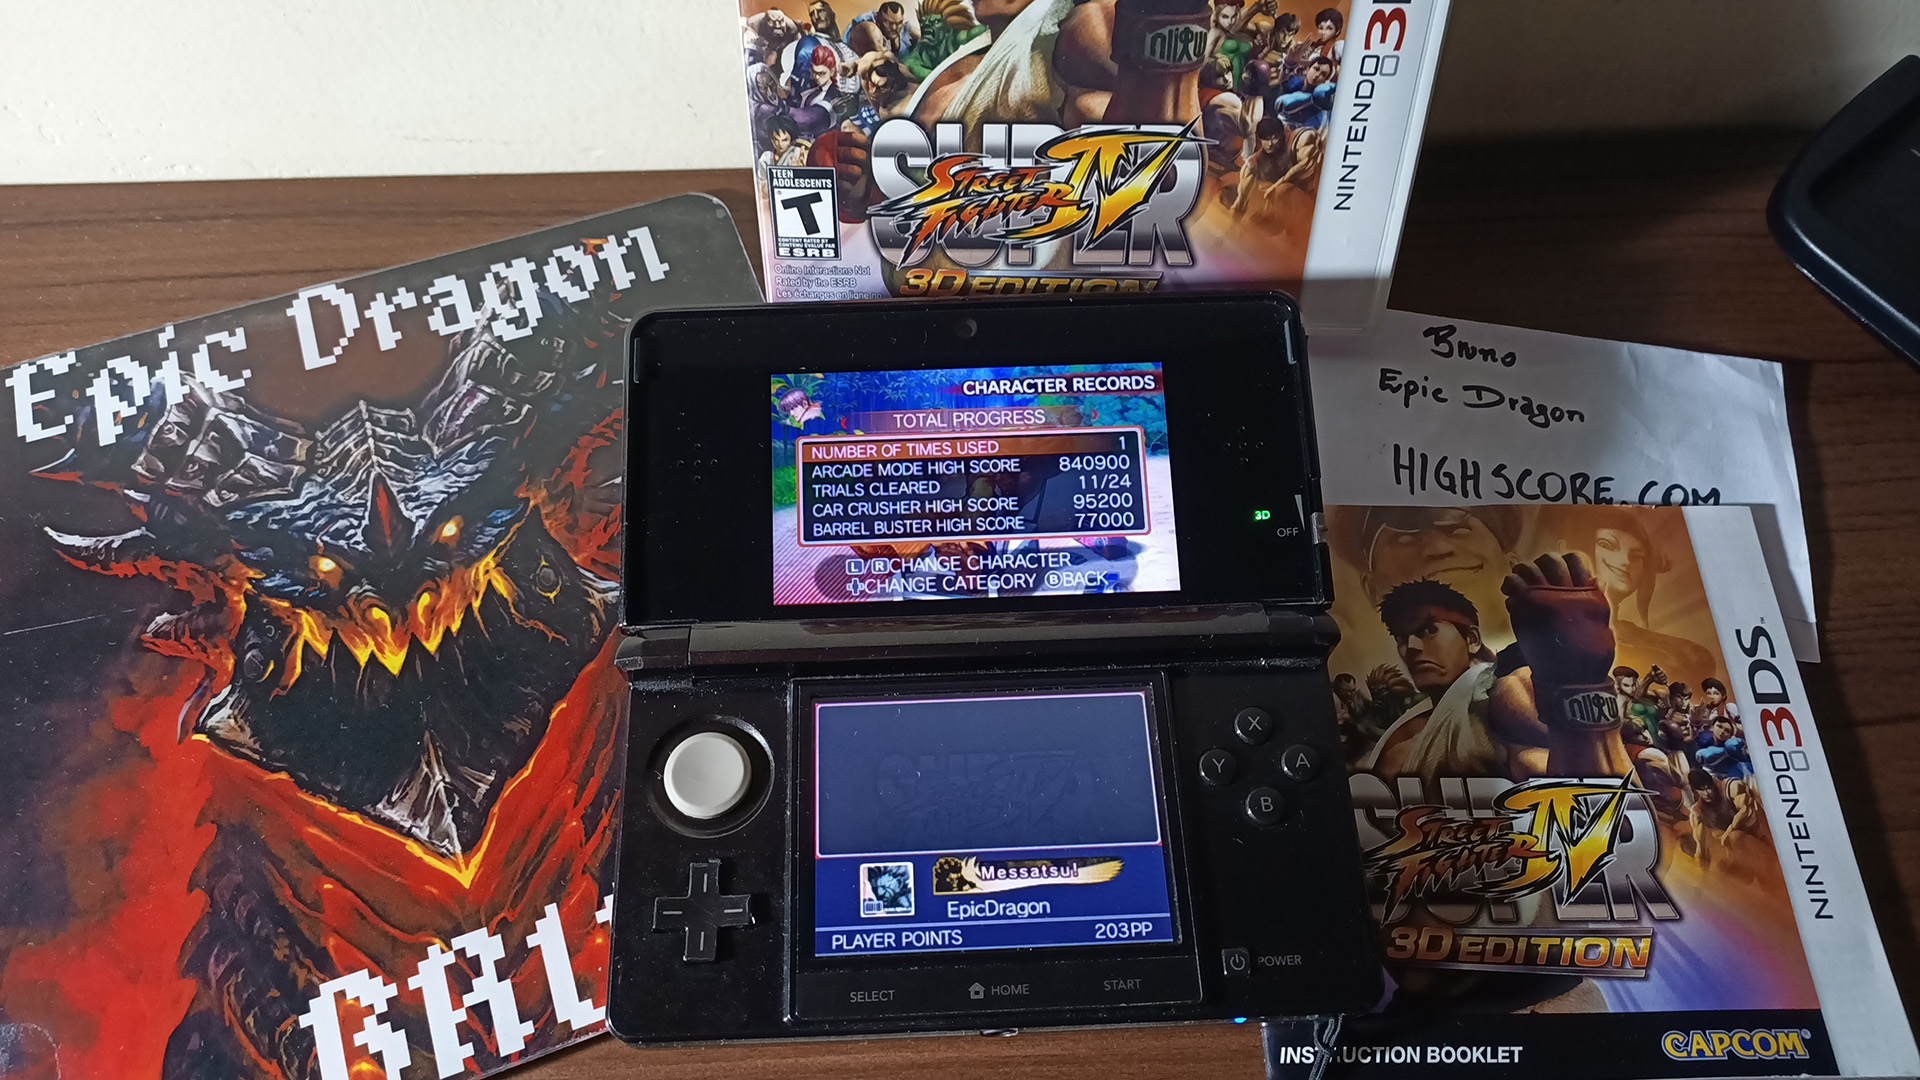 Super Street Fighter IV 3D Edition: Challenge: Barrel Buster: Guy 77,000 points